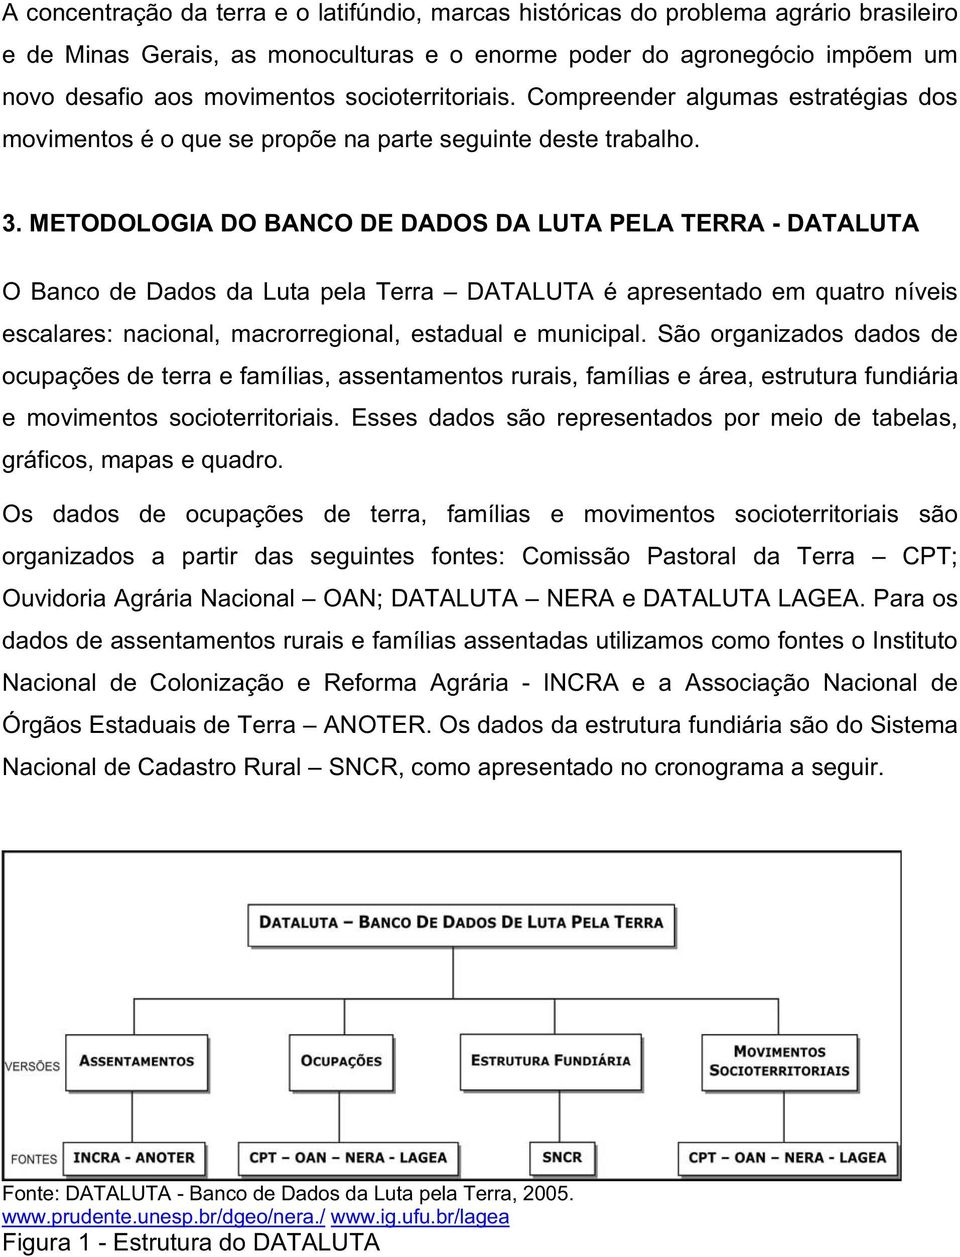 METODOLOGIA DO BANCO DE DADOS DA LUTA PELA TERRA - DATALUTA O Banco de Dados da Luta pela Terra DATALUTA é apresentado em quatro níveis escalares: nacional, macrorregional, estadual e municipal.